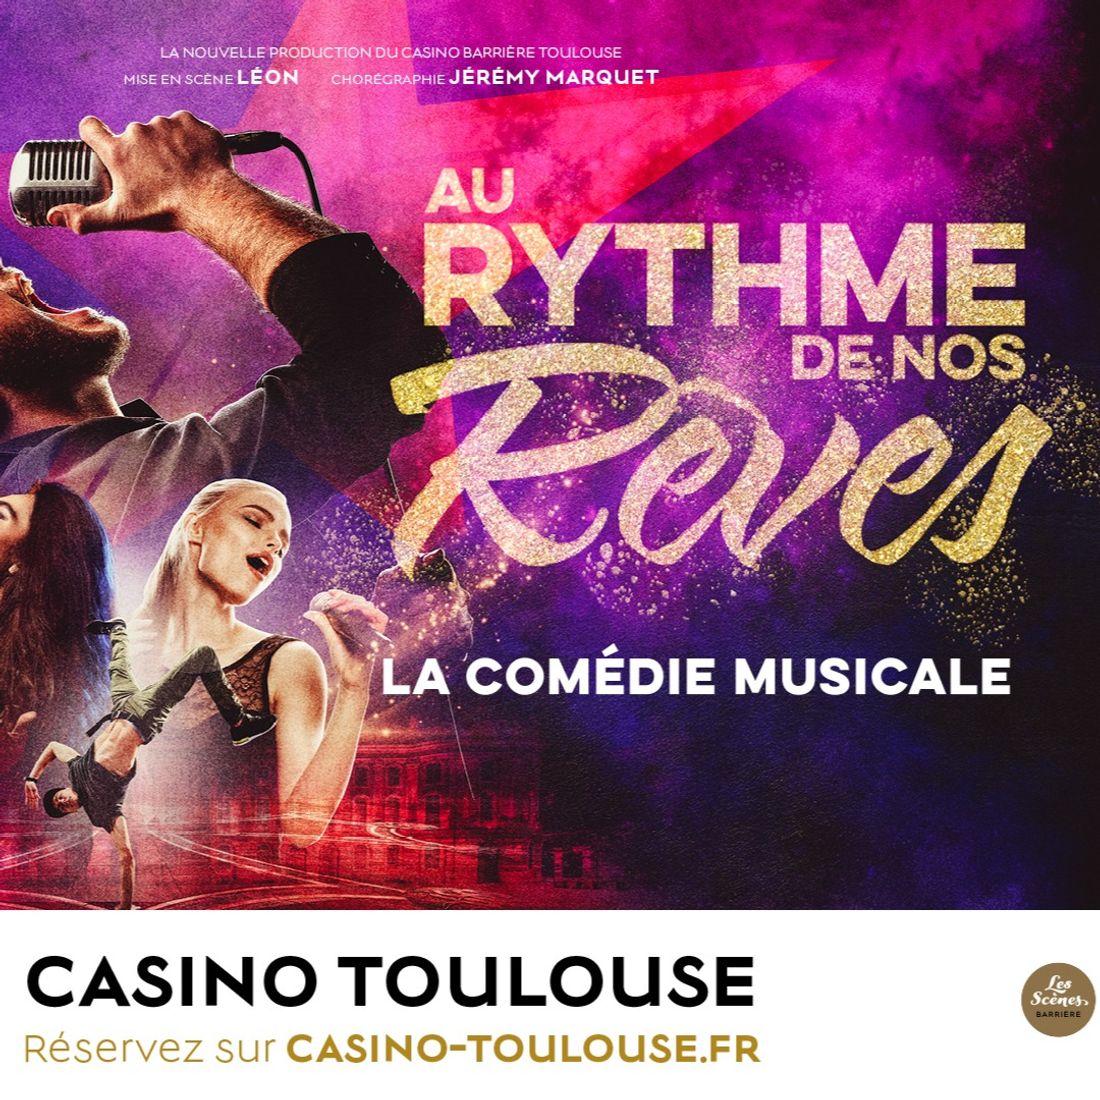 Nouvelle saison au Casino Barrière Toulouse au "Rythme de nos rêves"